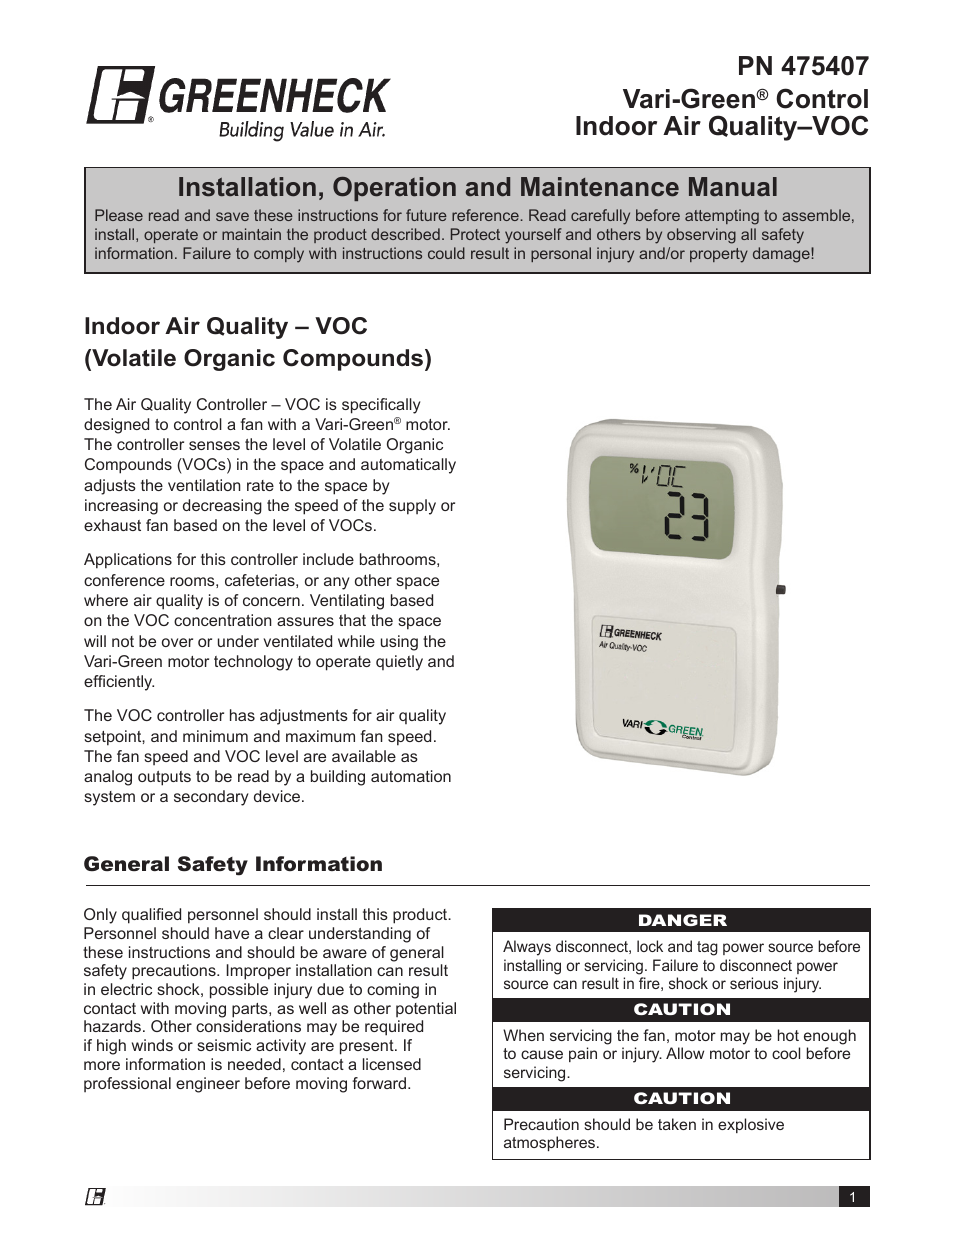 Vari-Green Control - Indoor Air Quality - VOC (I475407)